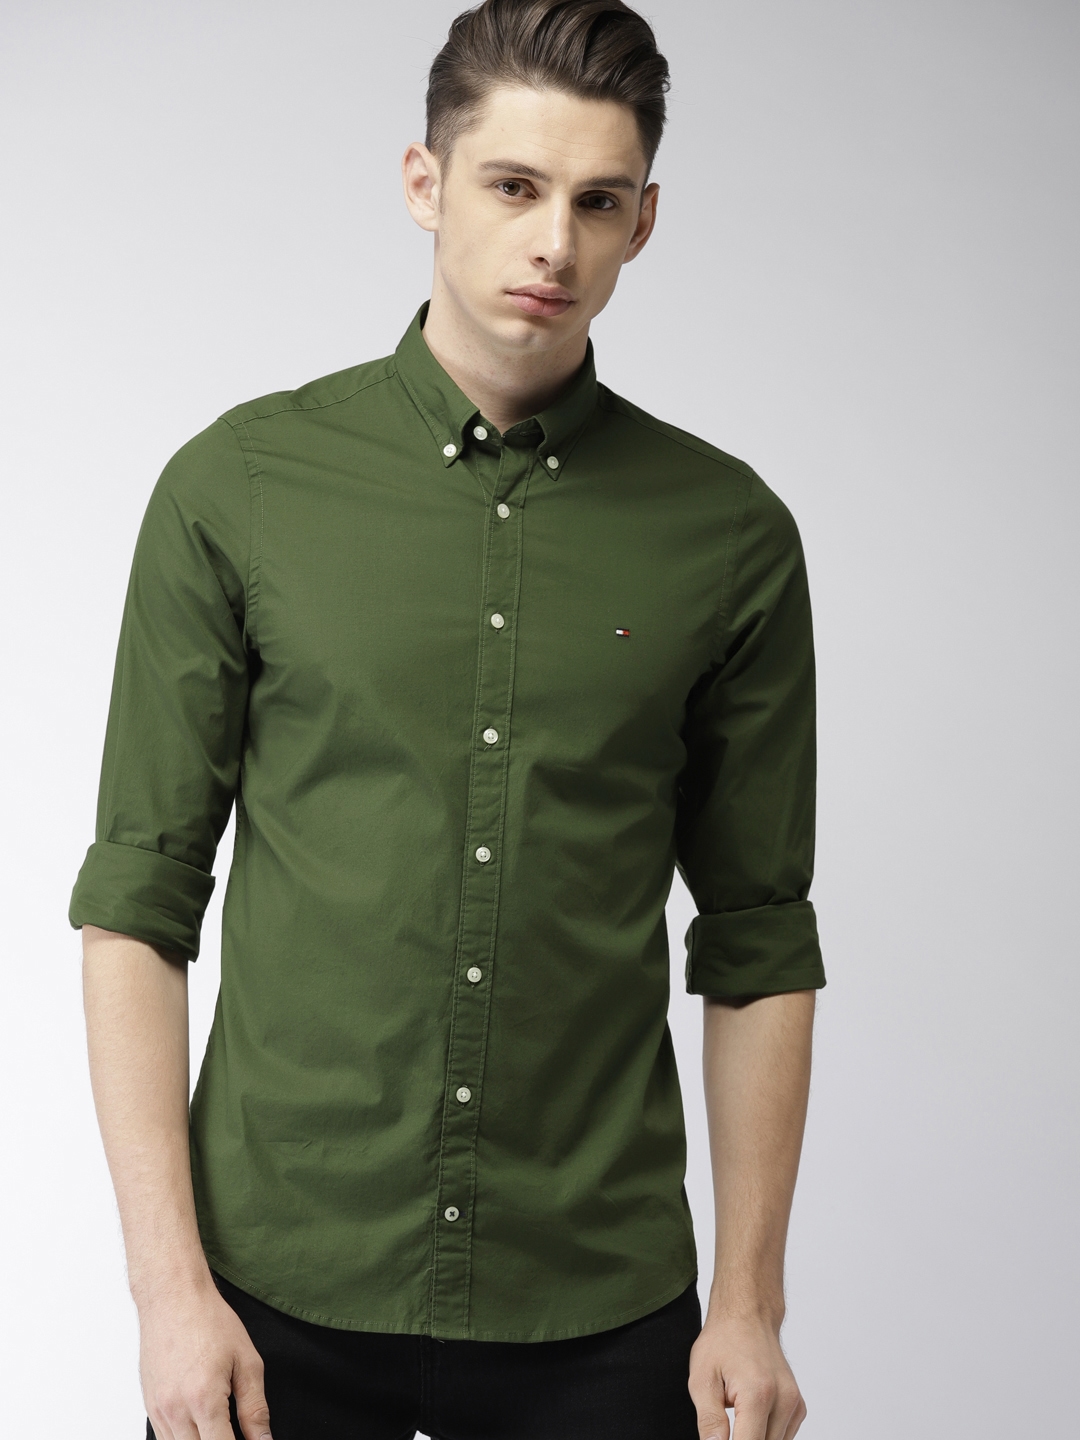 Buy Tommy Hilfiger Men Olive Green Slim Fit Solid Shirt - Shirts Men 7324583